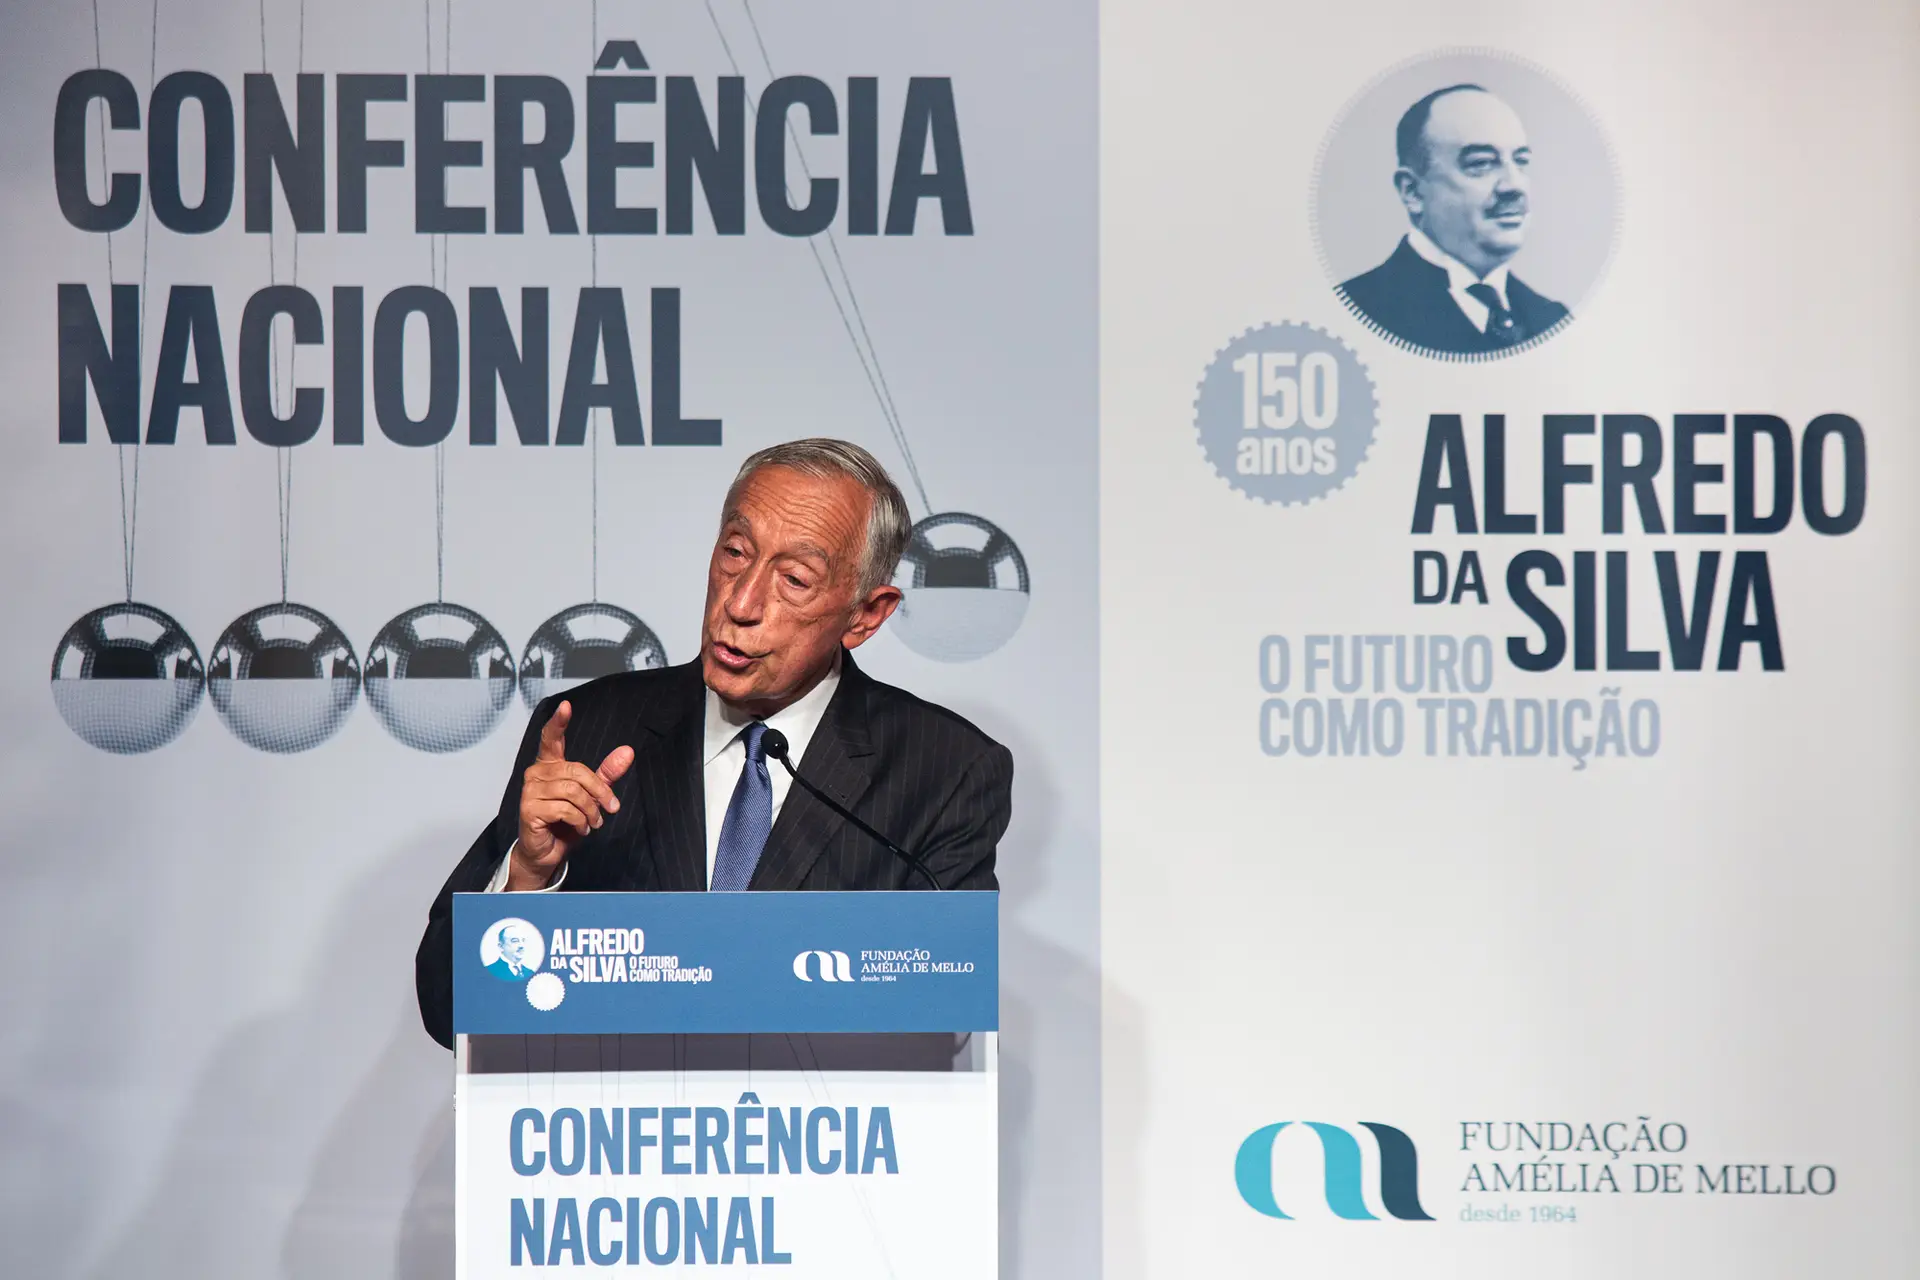 O presidente da República recordou "o génio único e irrepetível de Alfredo da Silva", mas também o legado que deixou e que considera "inspirador" para o país